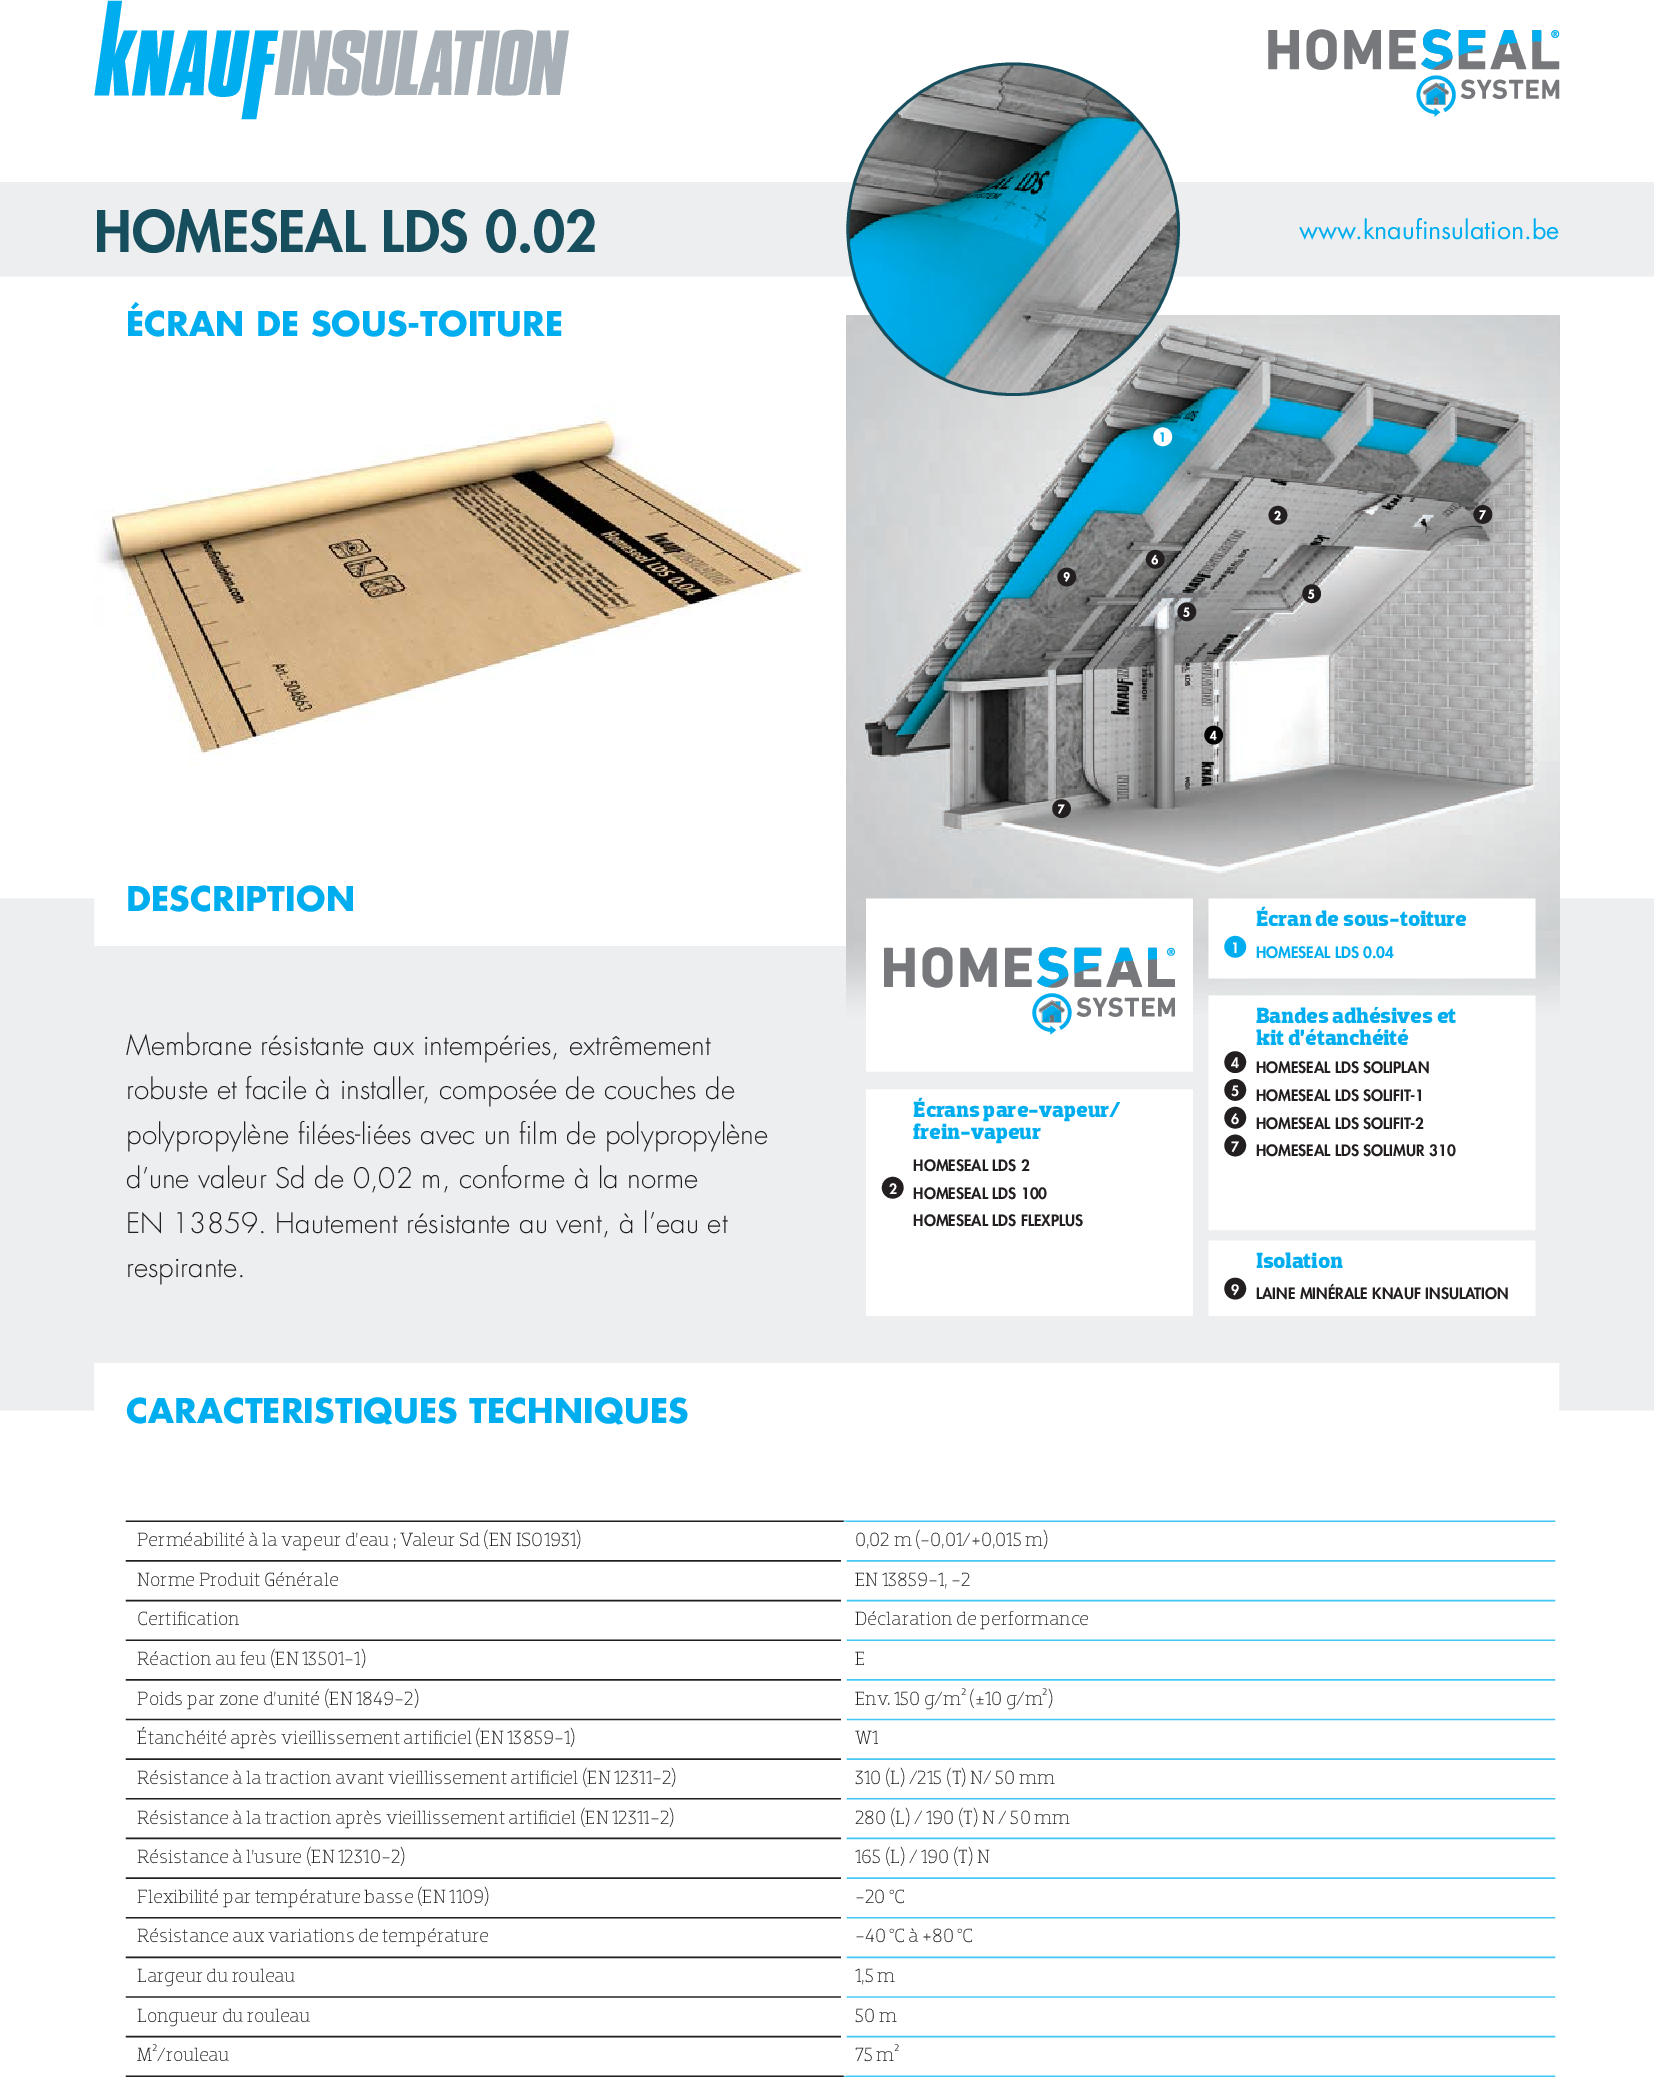 Homeseal LDS 0.04 - Fiche technique - Produit